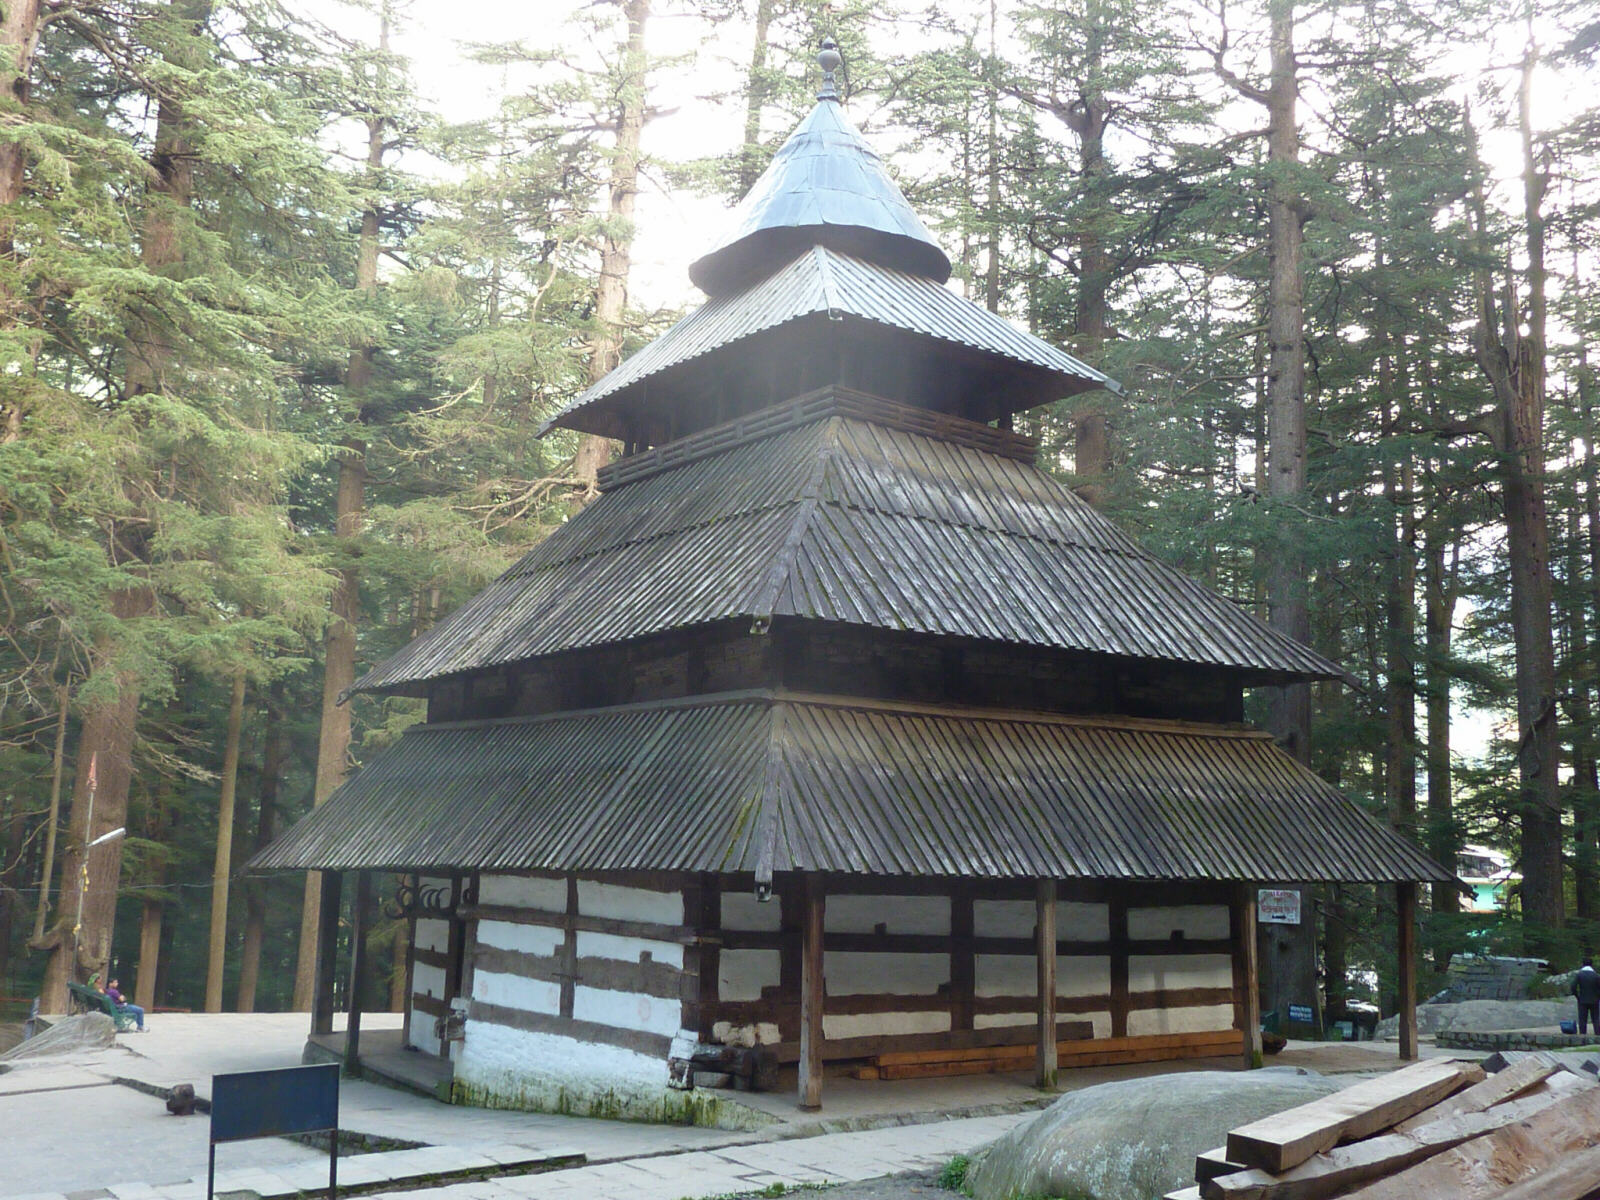 Hadimba Temple in Manali, Himachal Pradesh, India